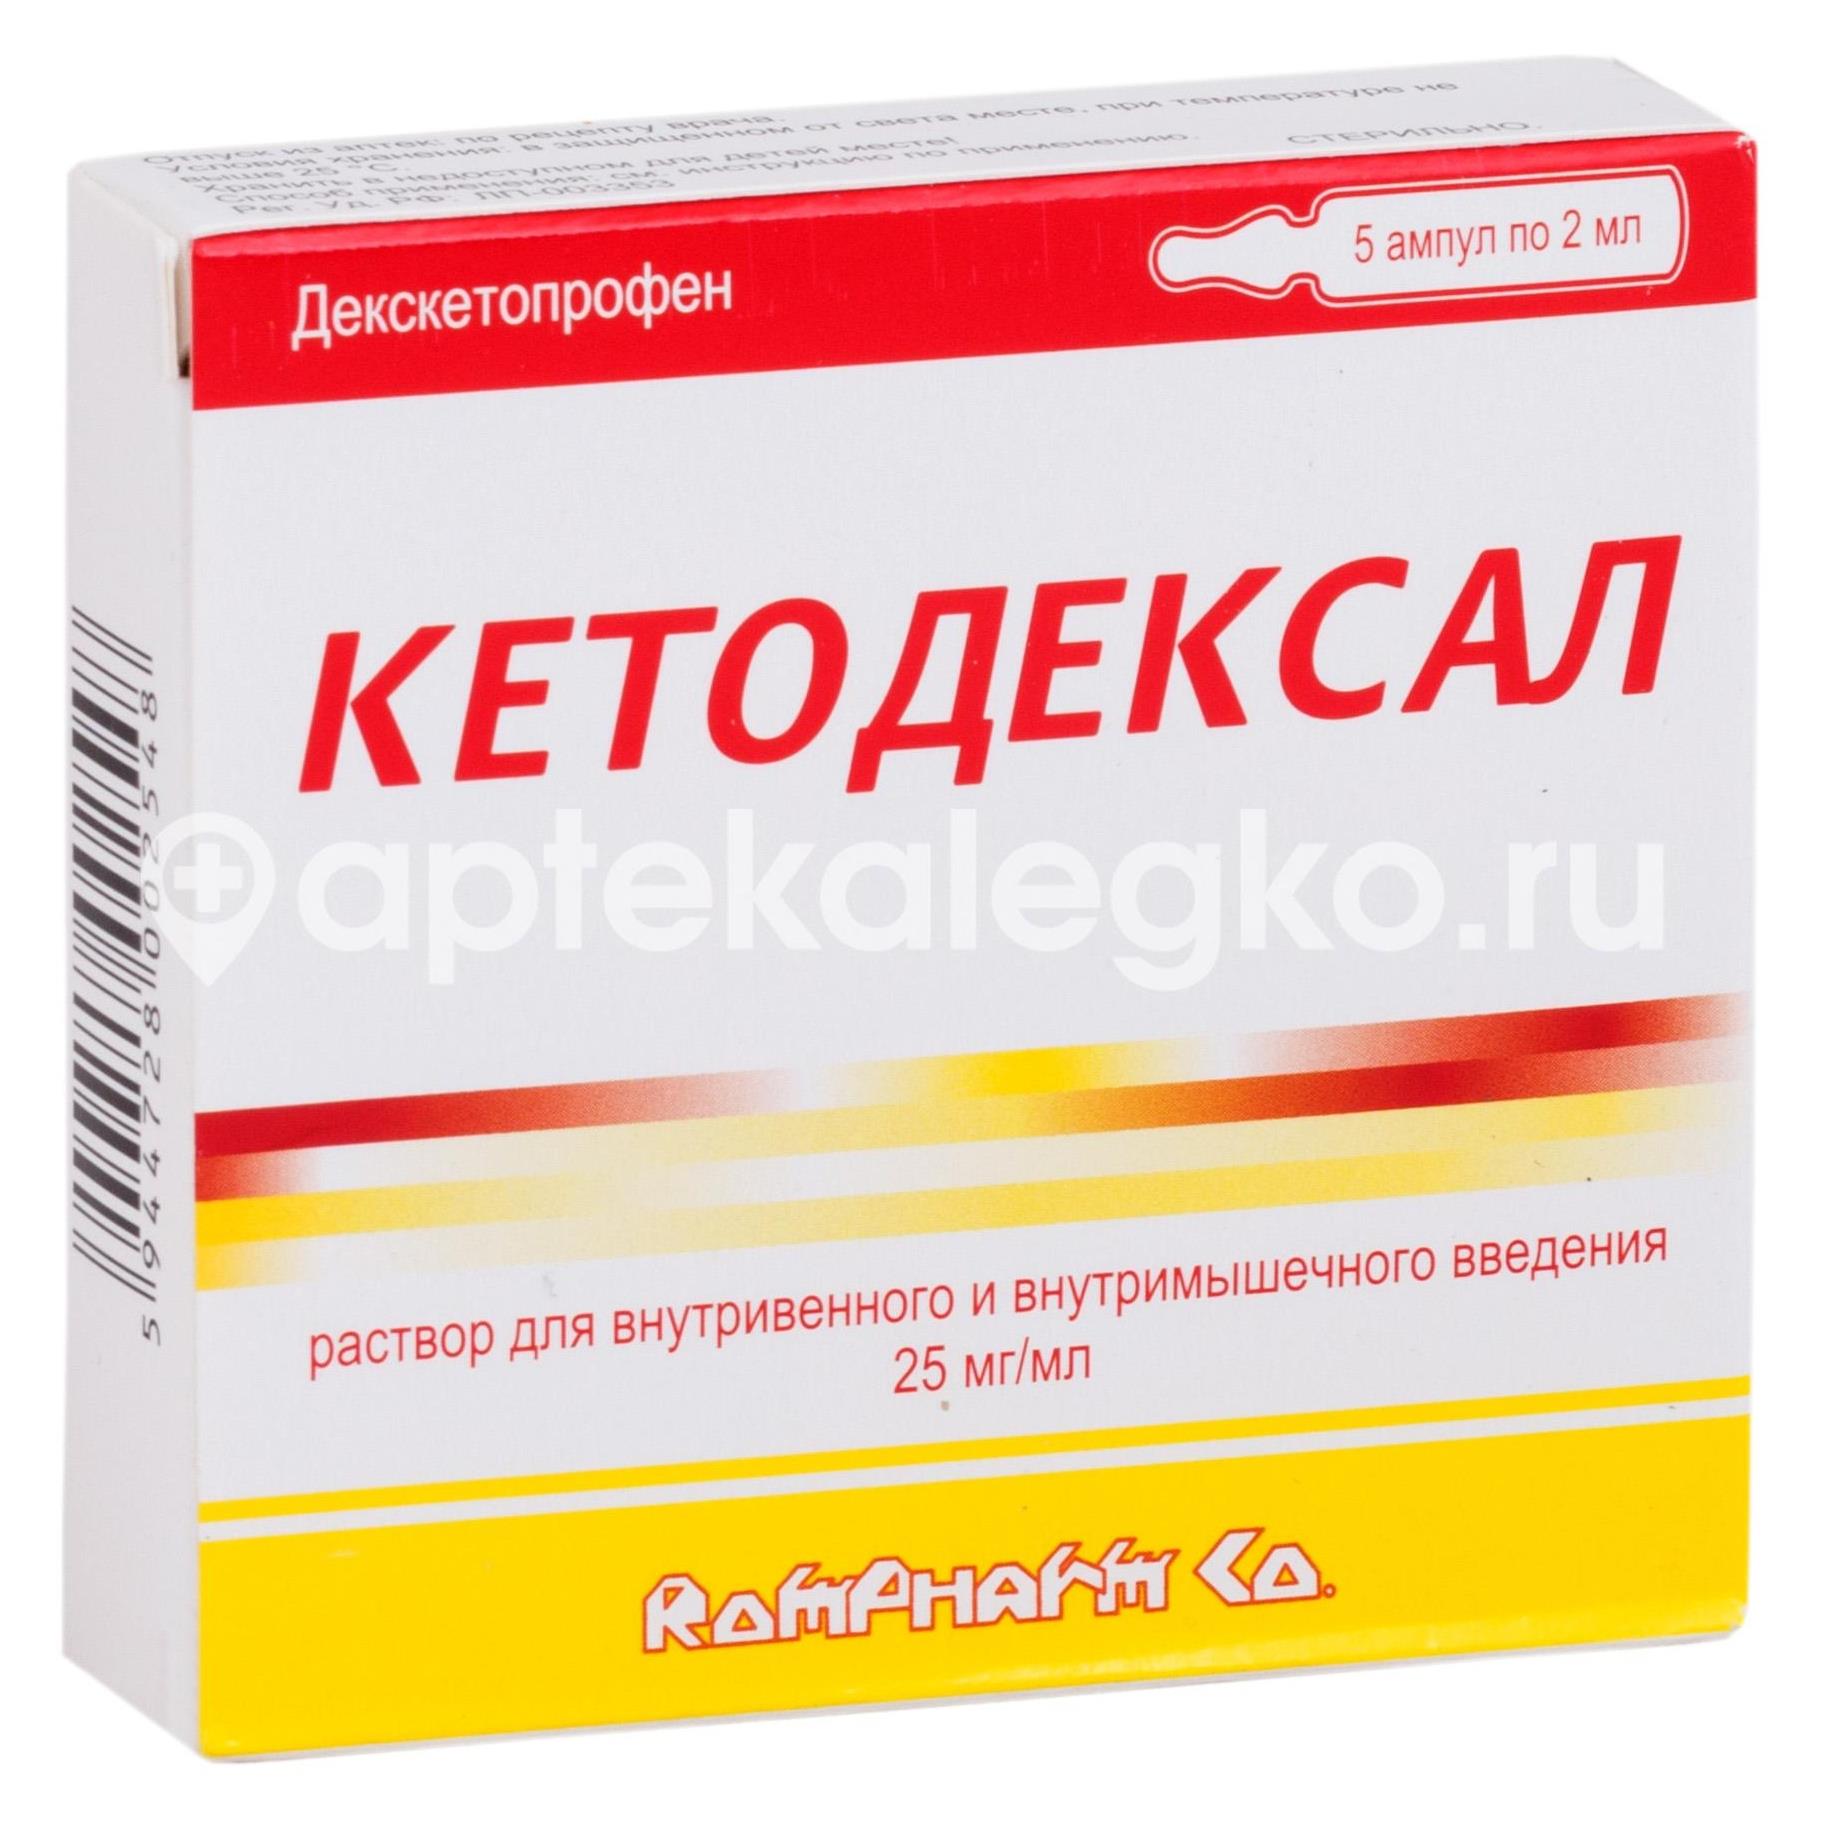 Кетодексал 2мг./мл. 5шт. раствор для внутривенного и внутримышечного введения 2мл. ампула - 1